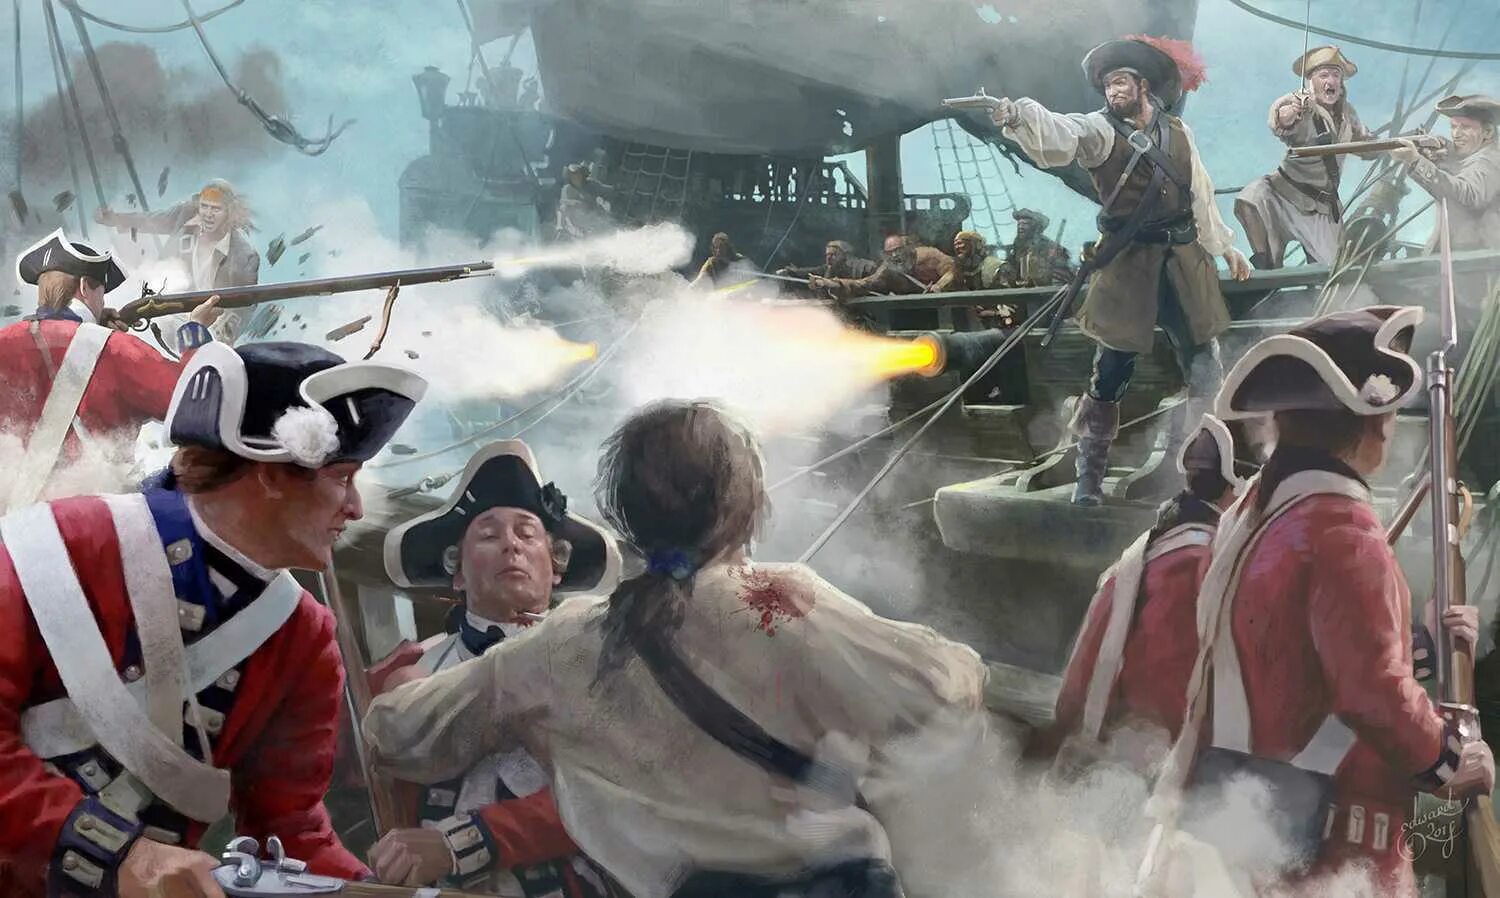 Нападение на корабль. Даниэль Монбар пират. Абордаж 17 века. Абордаж корабля пираты Карибского моря. Пираты абордаж арт.